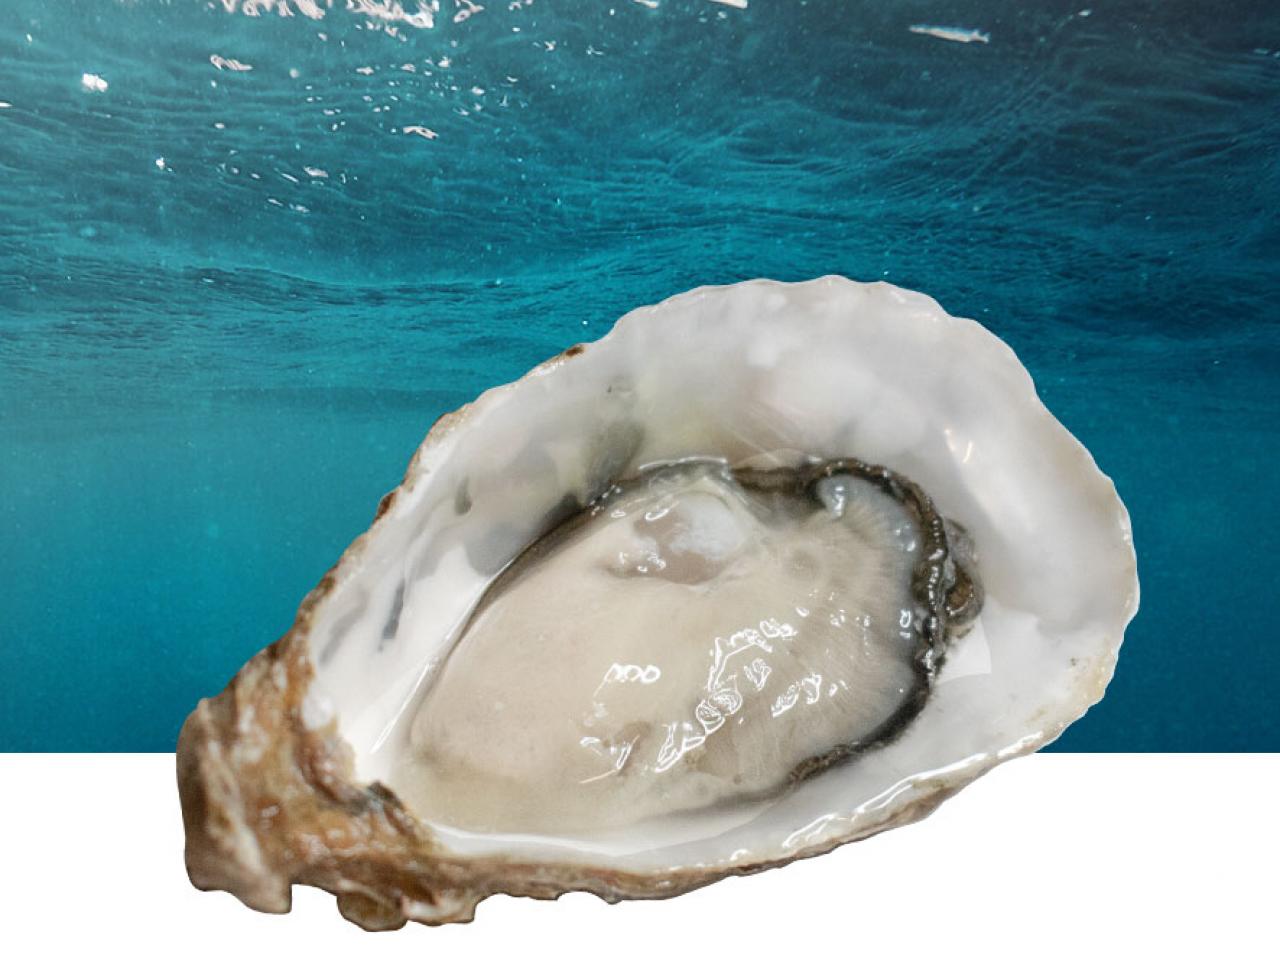 Fine de claire franse oester